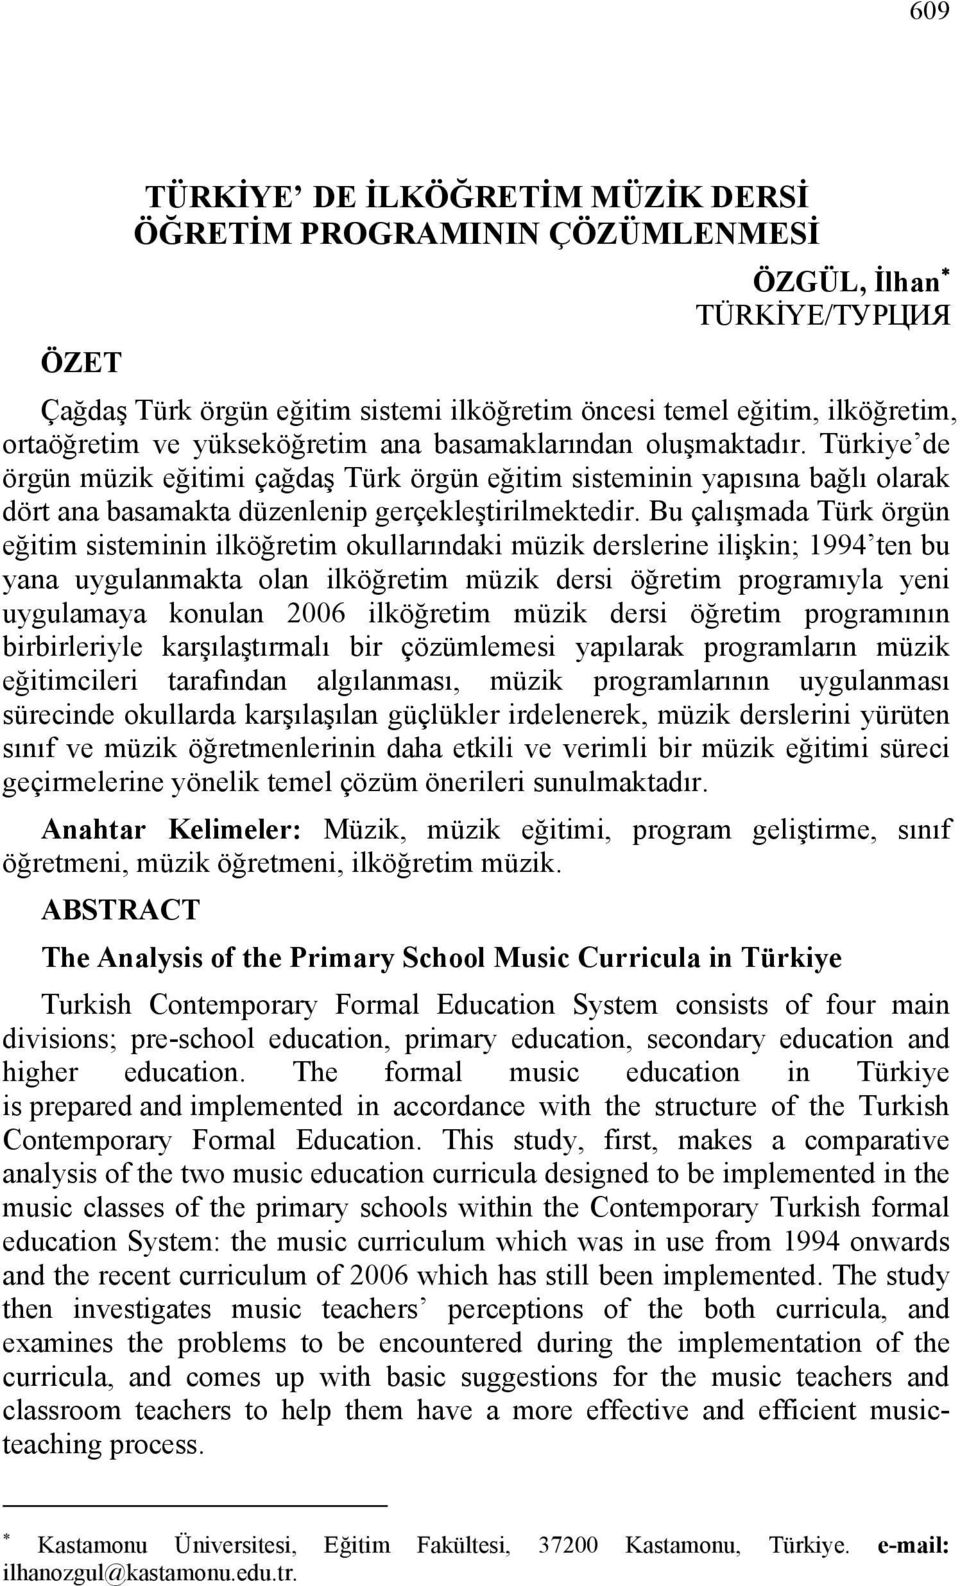 Bu çalışmada Türk örgün eğitim sisteminin ilköğretim okullarındaki müzik derslerine ilişkin; 1994 ten bu yana uygulanmakta olan ilköğretim müzik dersi öğretim programıyla yeni uygulamaya konulan 2006